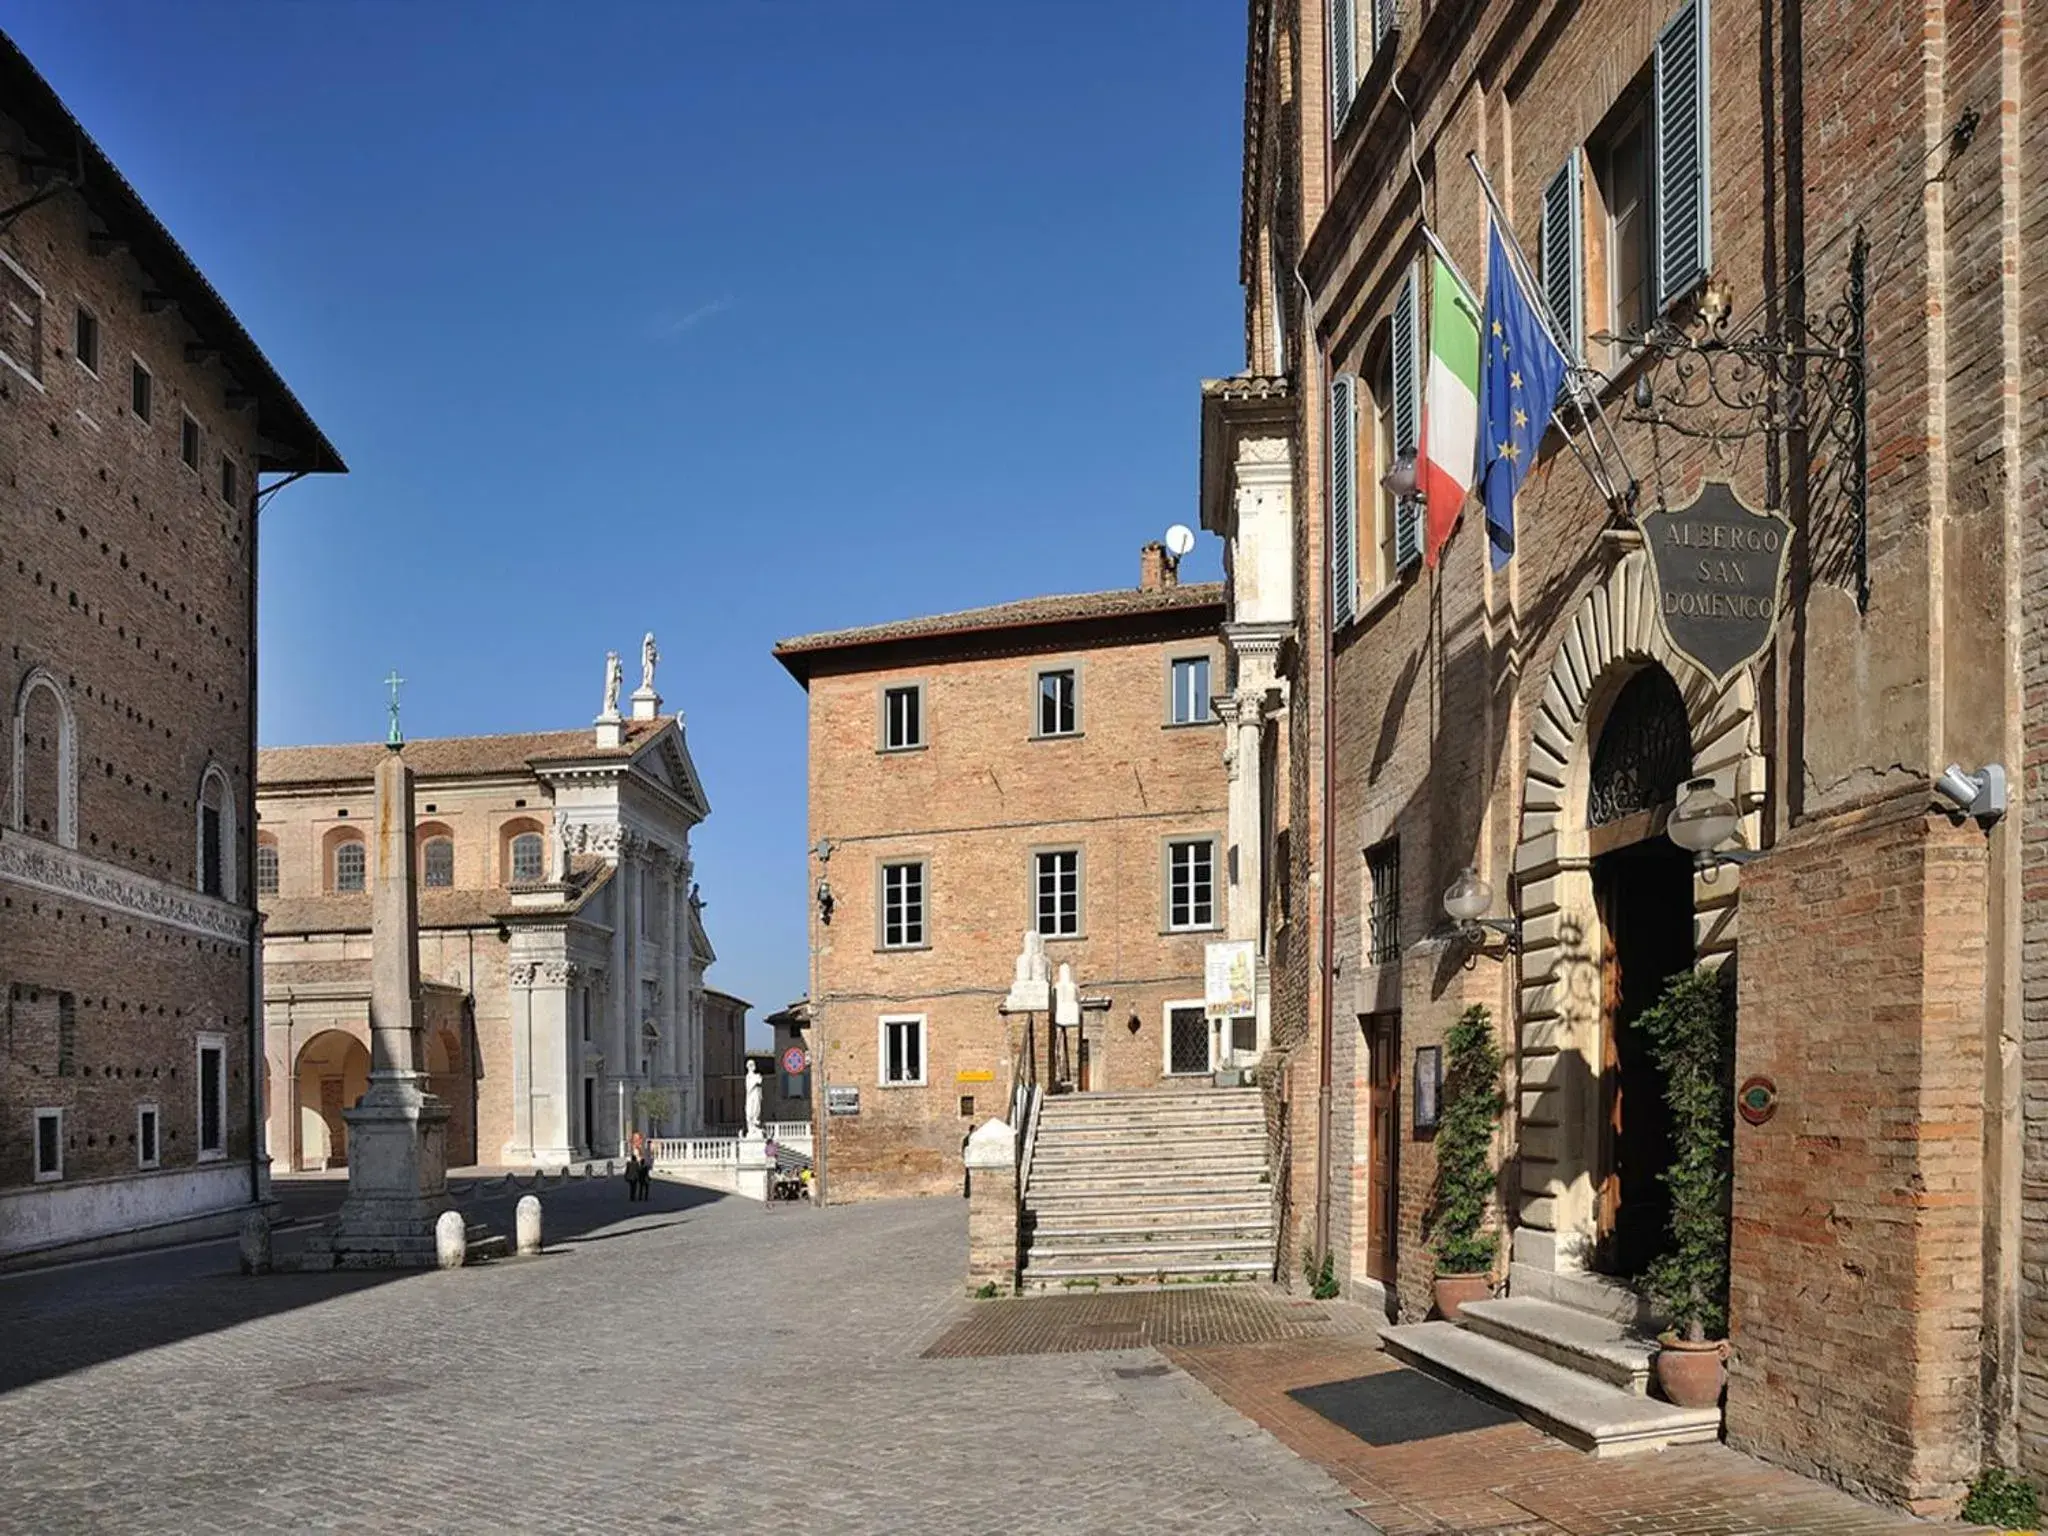 Area and facilities in Albergo San Domenico